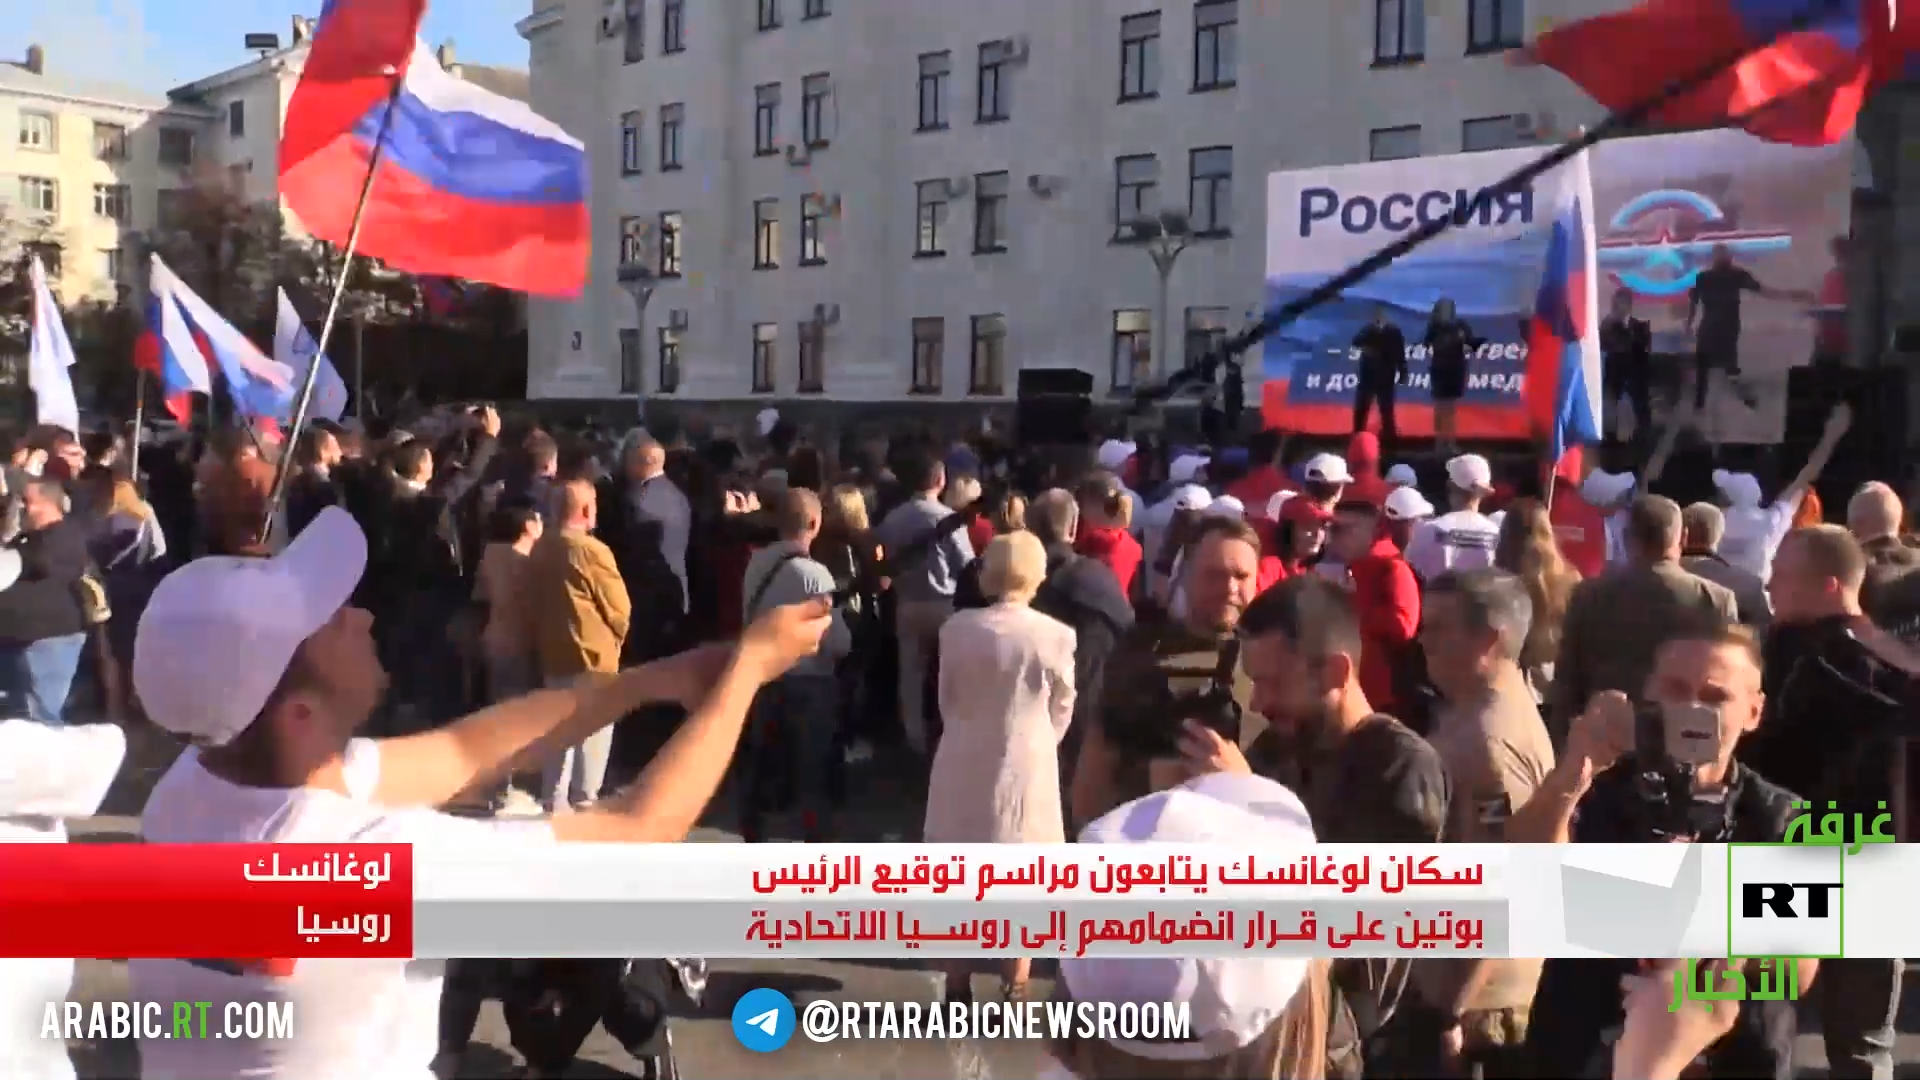 سكان لوغانسك يتابعون مراسم توقيع الرئيس بوتين على قـرار انضمامهم إلى روسيا الاتحادية